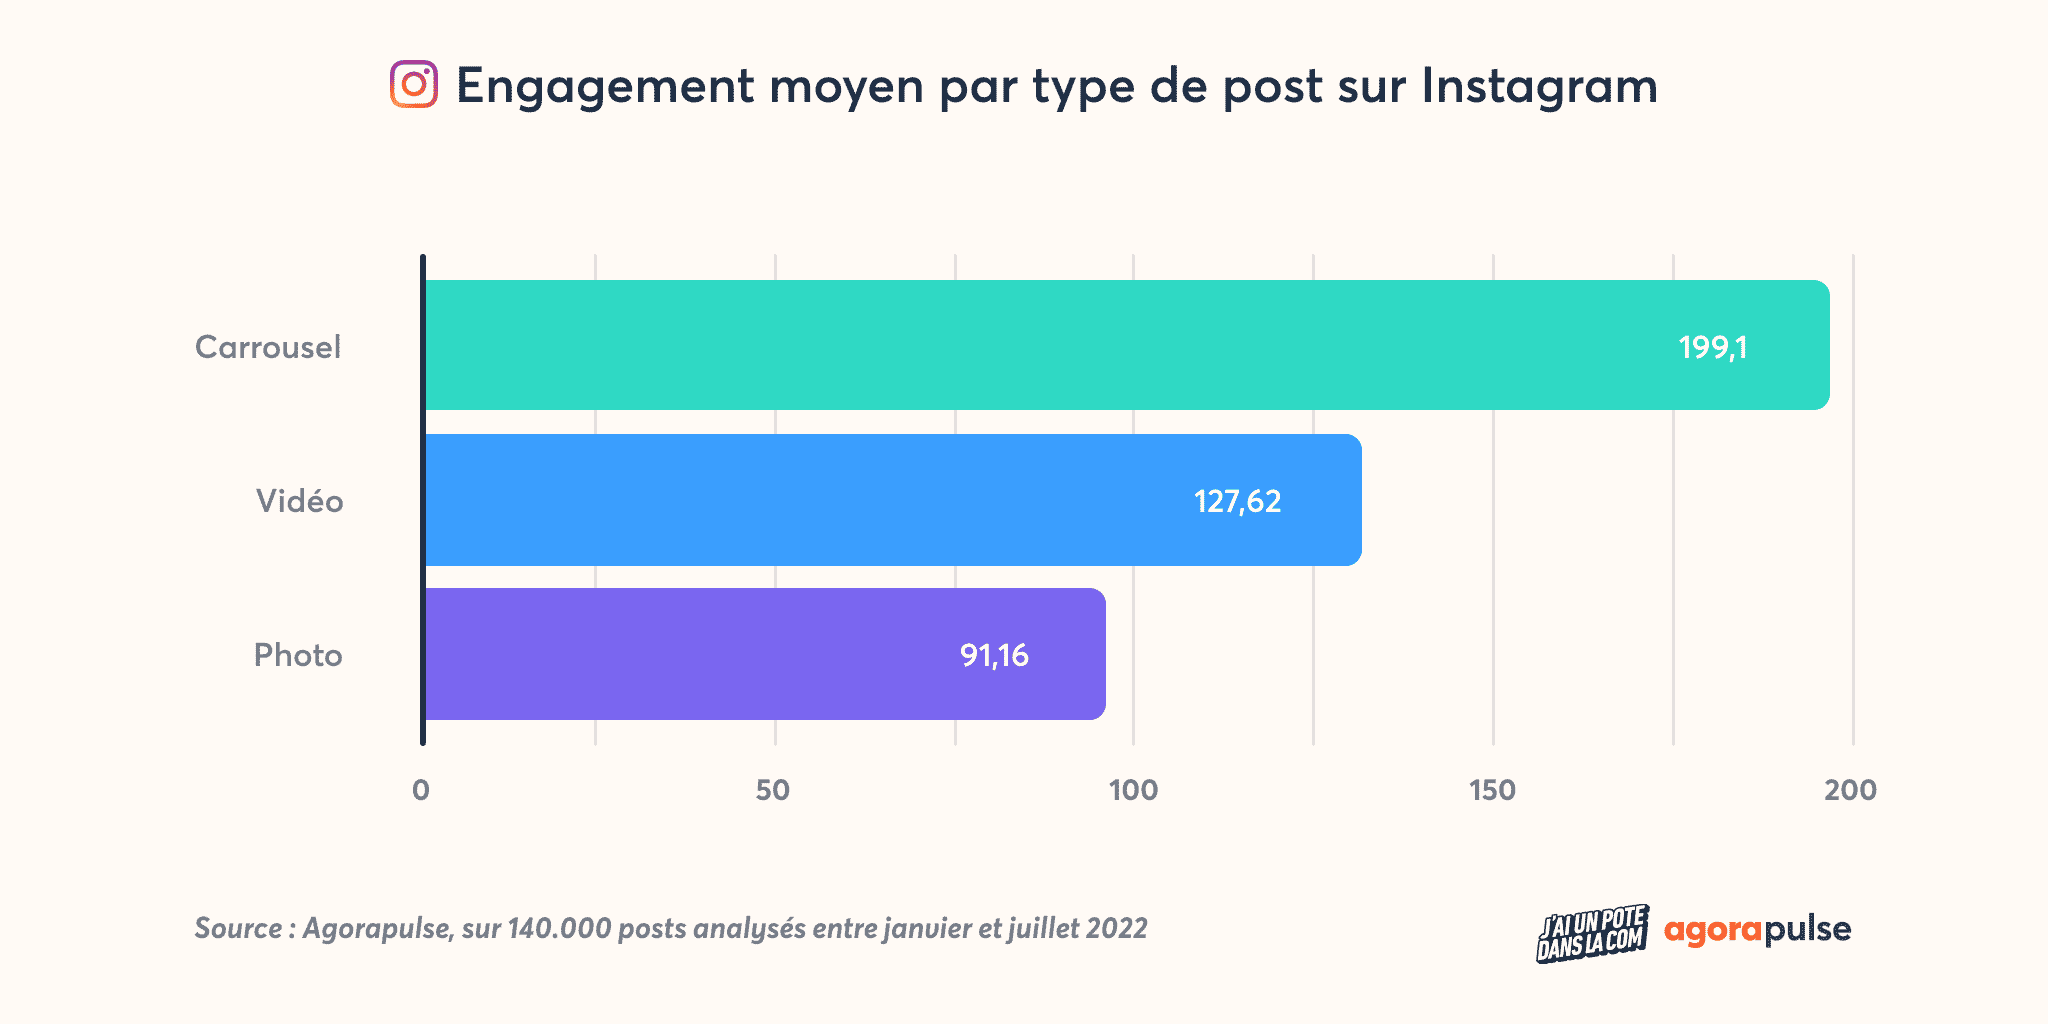 Engagement moyen par type de post sur Instagram - Etude agences 2022